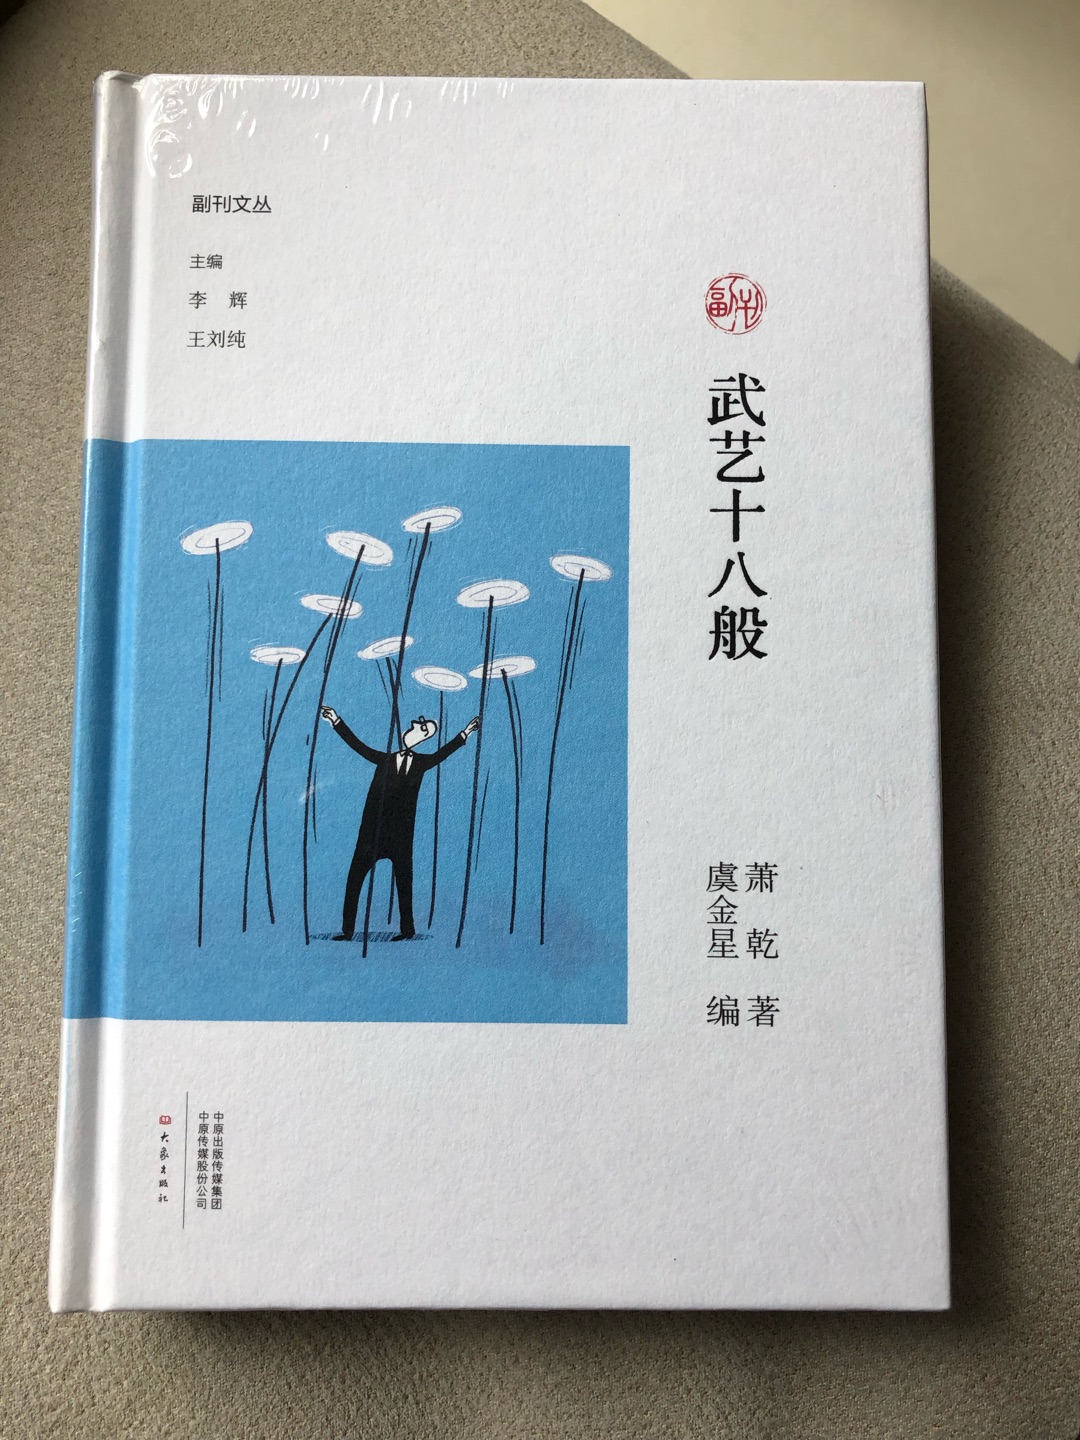 九州出版社引进台湾的经典宝库，适合在阅读原典之前的准备阅读。